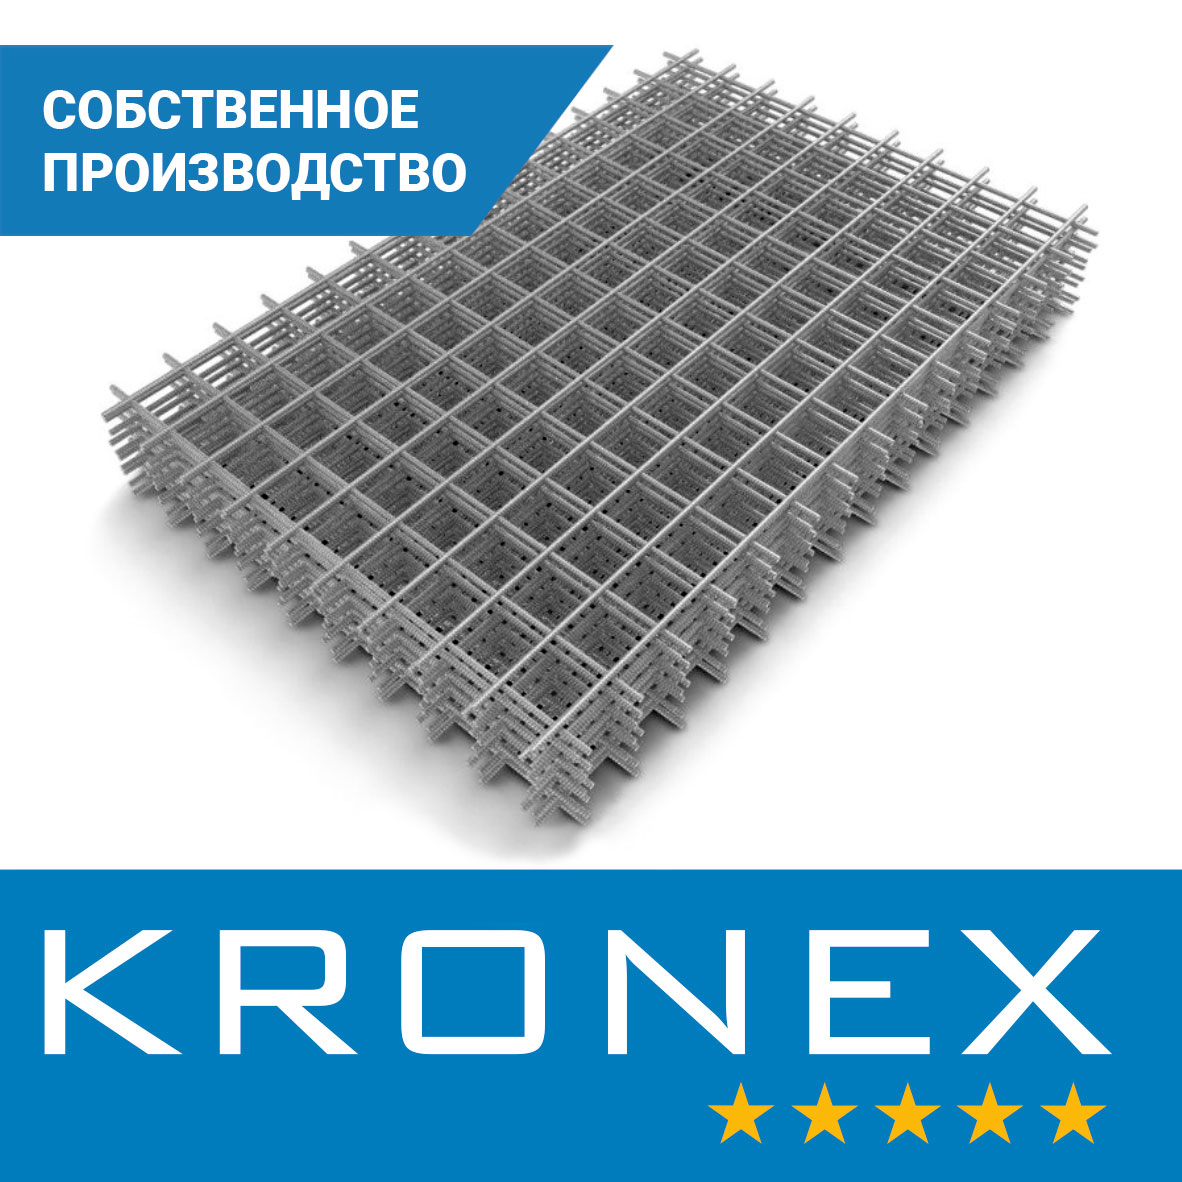 Сетка сварная усиленная KRONEX 200/200/6 (карта 3×2 м), исп. по ГОСТ 23279-2012